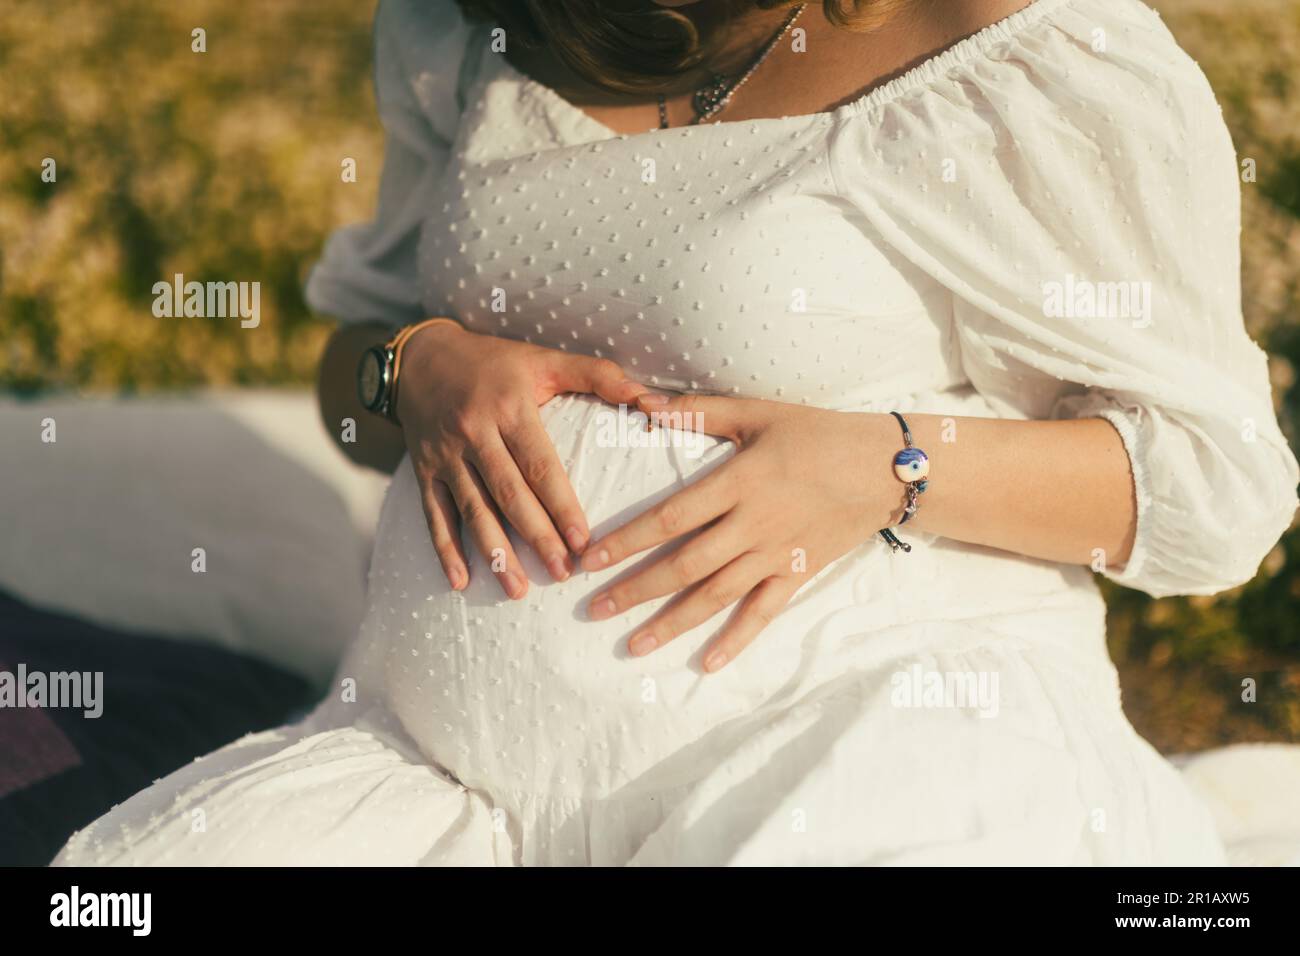 In un primo piano del ventre, una donna incinta forma con le mani un cuore, un'affascinante coccinella appoggiata sulla pelle, simbolo dell'amore e del buon luc Foto Stock